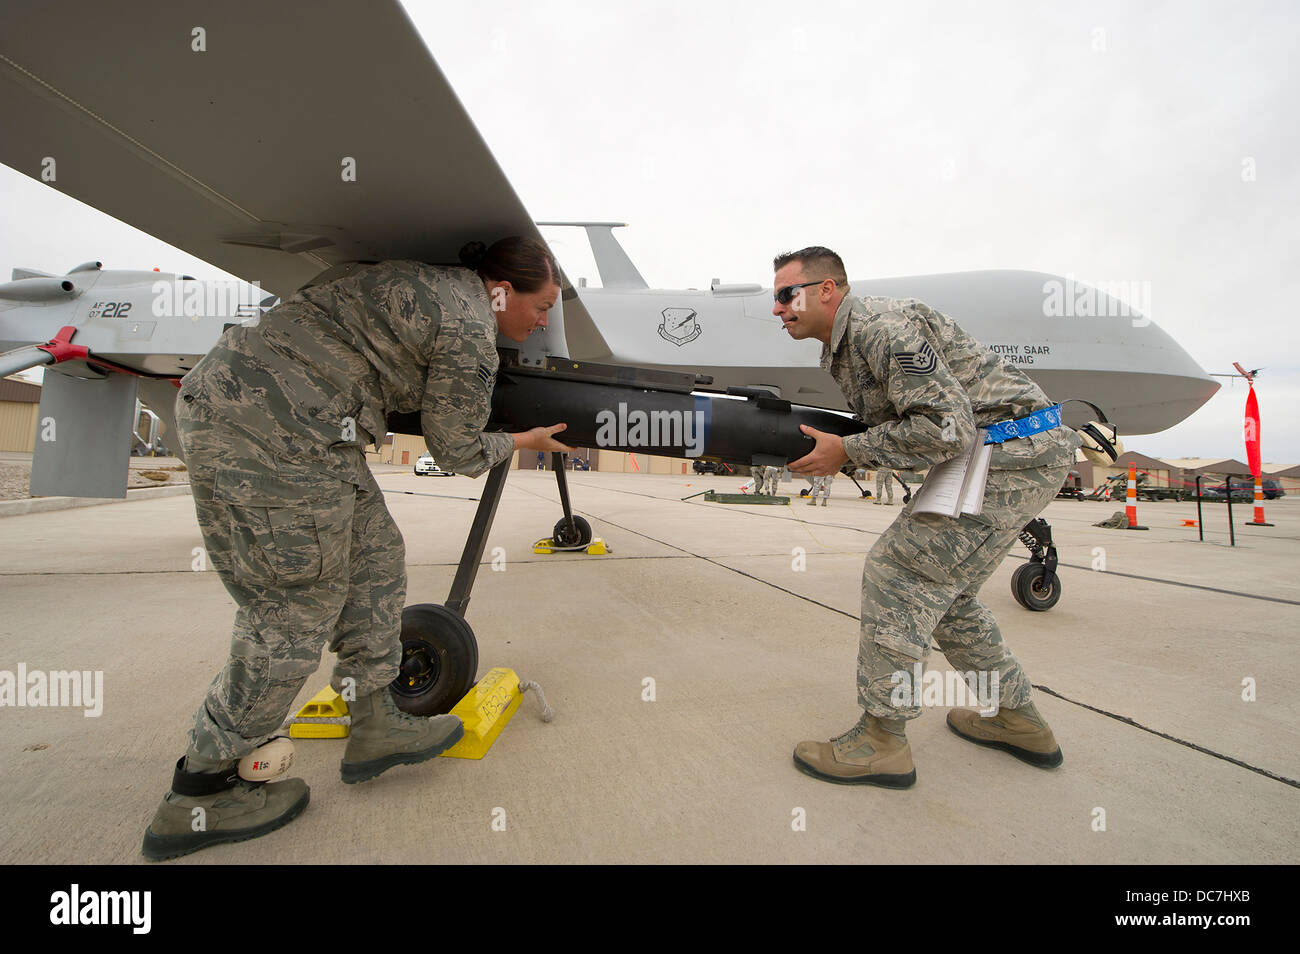 La Fuerza Aérea de EE.UU. aviadores cargar un misil en un MQ-1 Predator Drone aéreo no tripulado de Abril 5, 2013 en Holloman Air Force Base, NM. Foto de stock